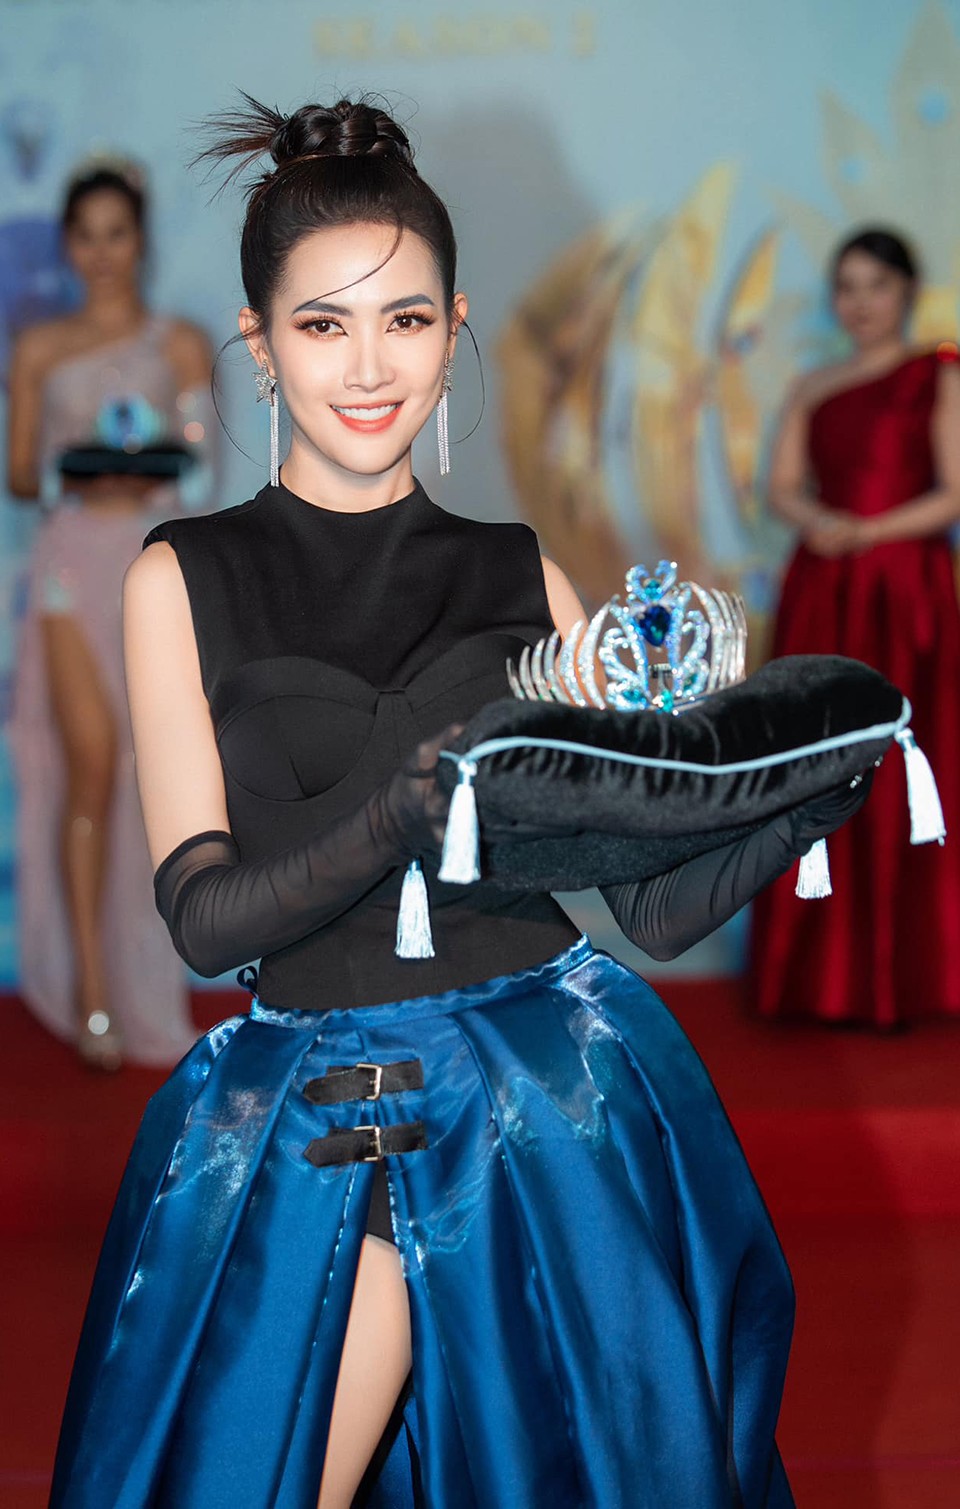 Hoa hậu Phan Thị Mơ: “Tôi nhiều lần đổ bệnh khi lấn sân đóng hài” - 2